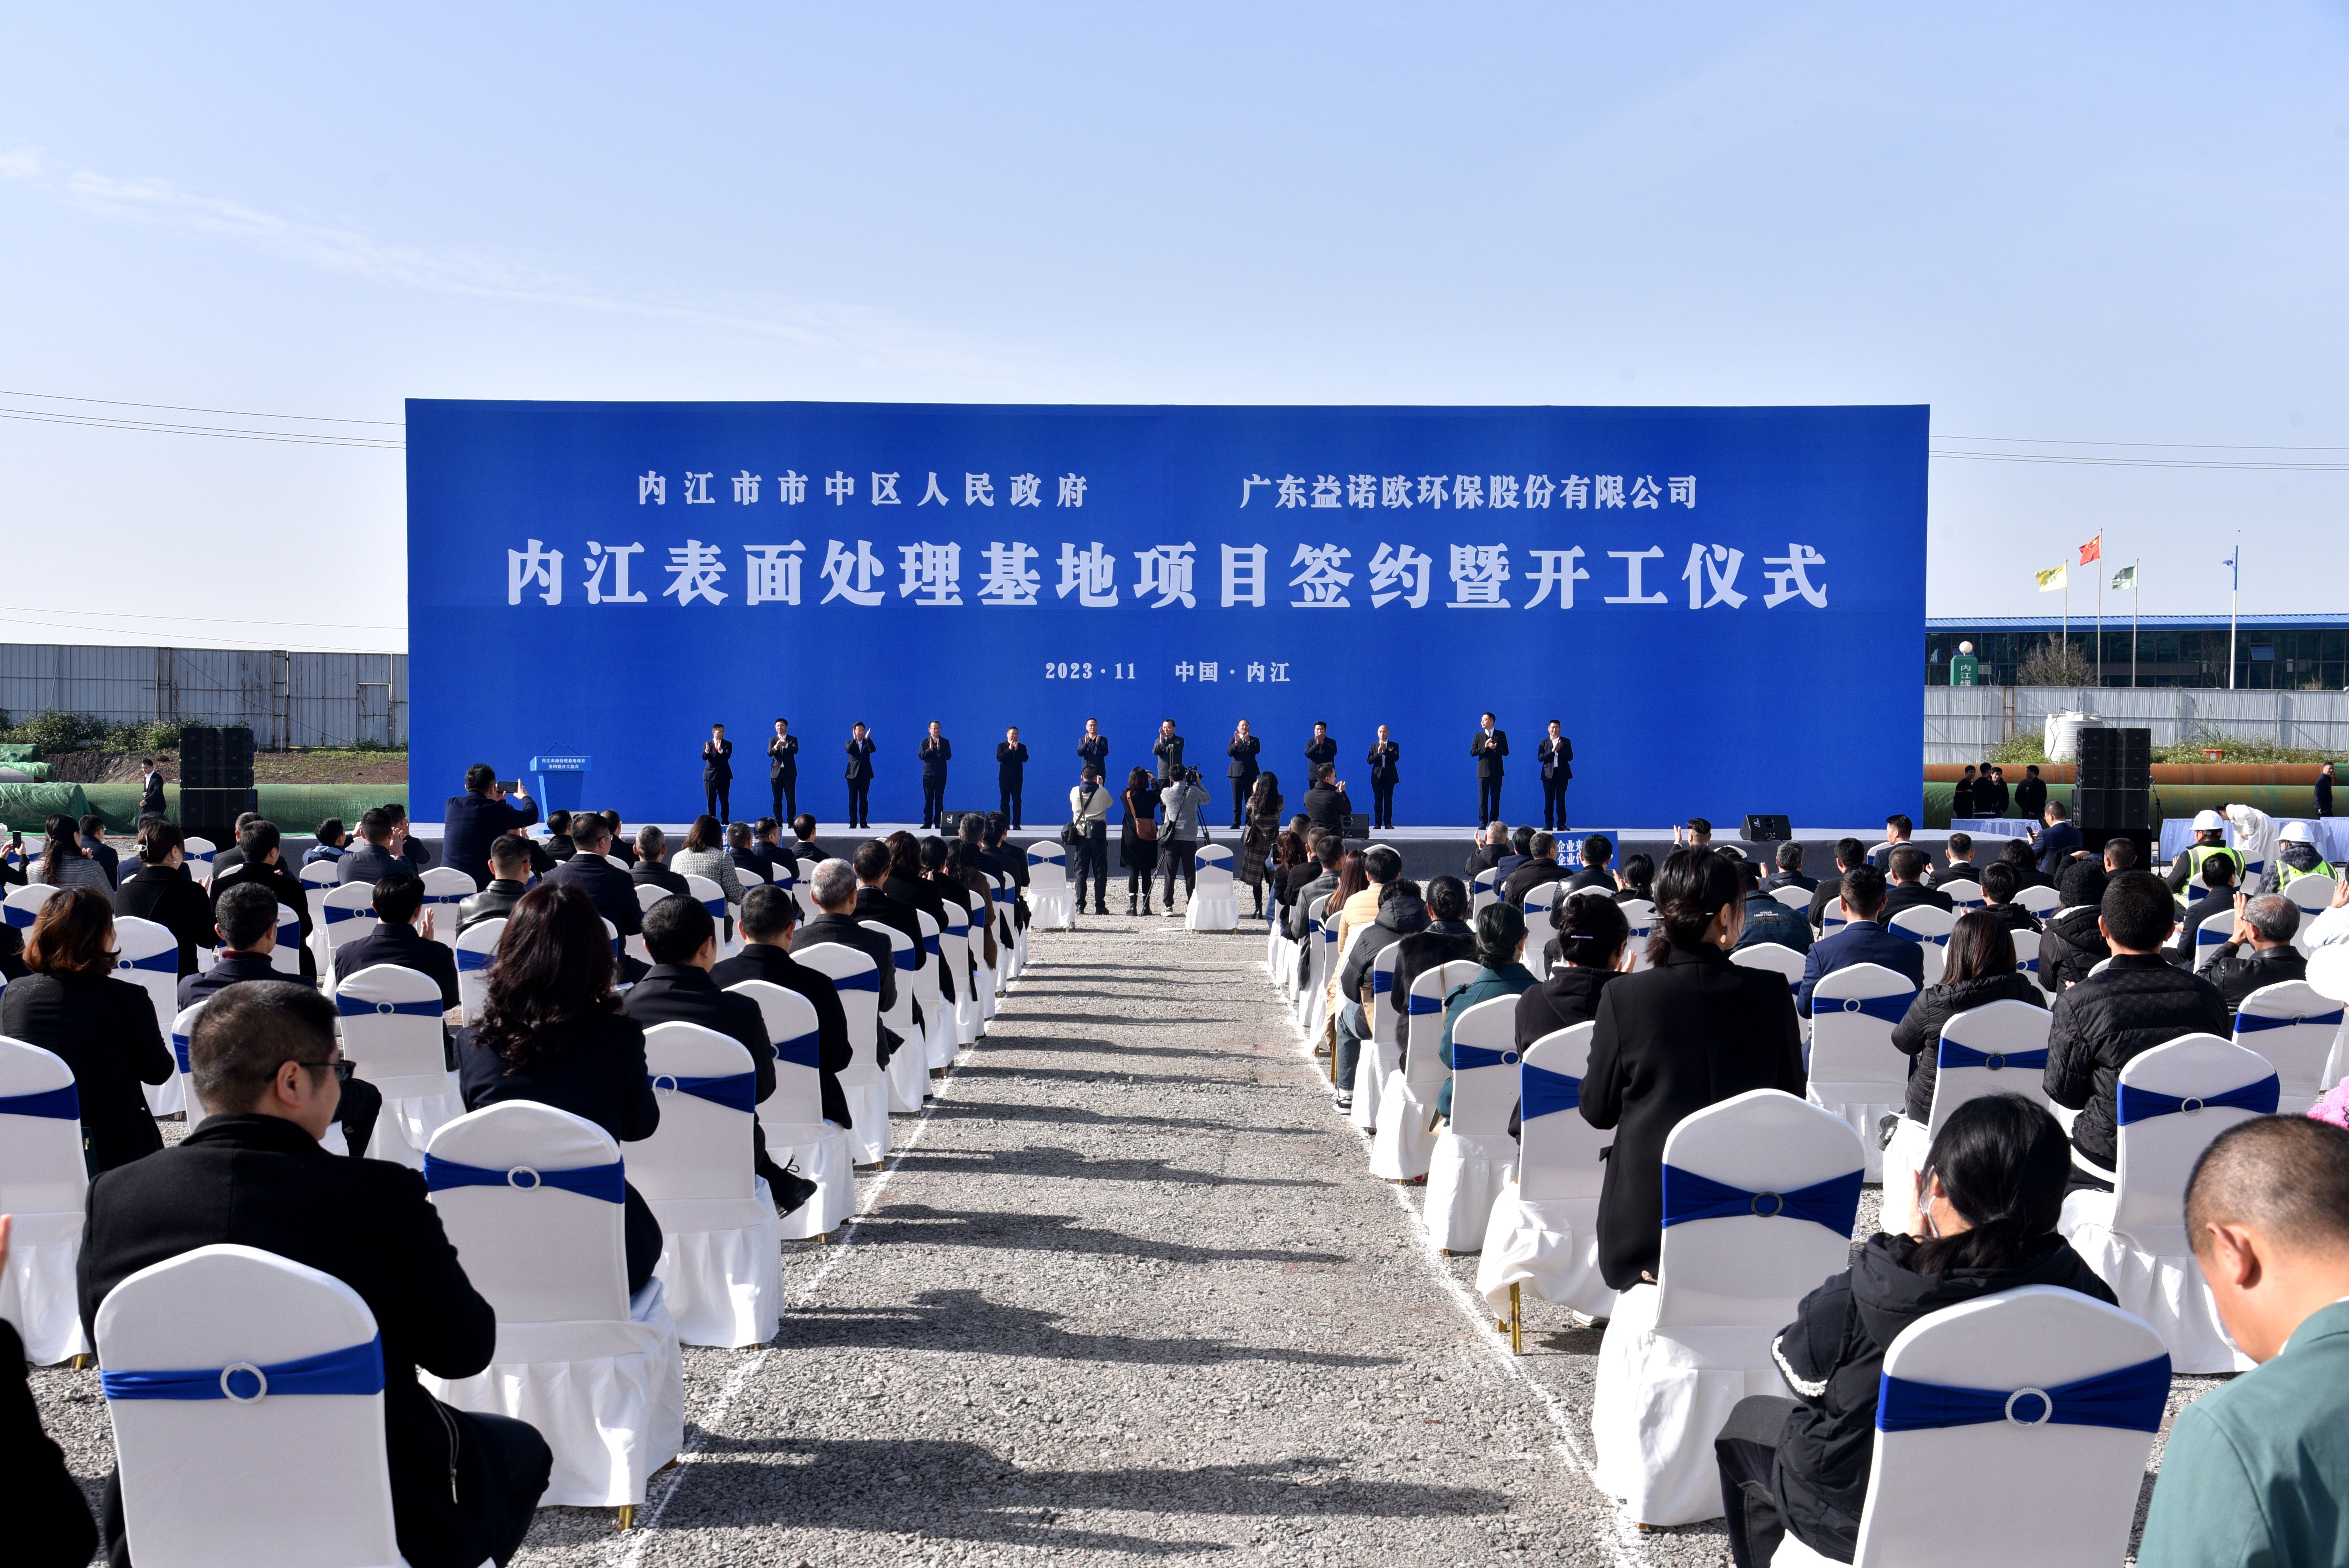 四川內江舉行內江表面處理基地項目簽約暨開工儀式  投資總額85億元